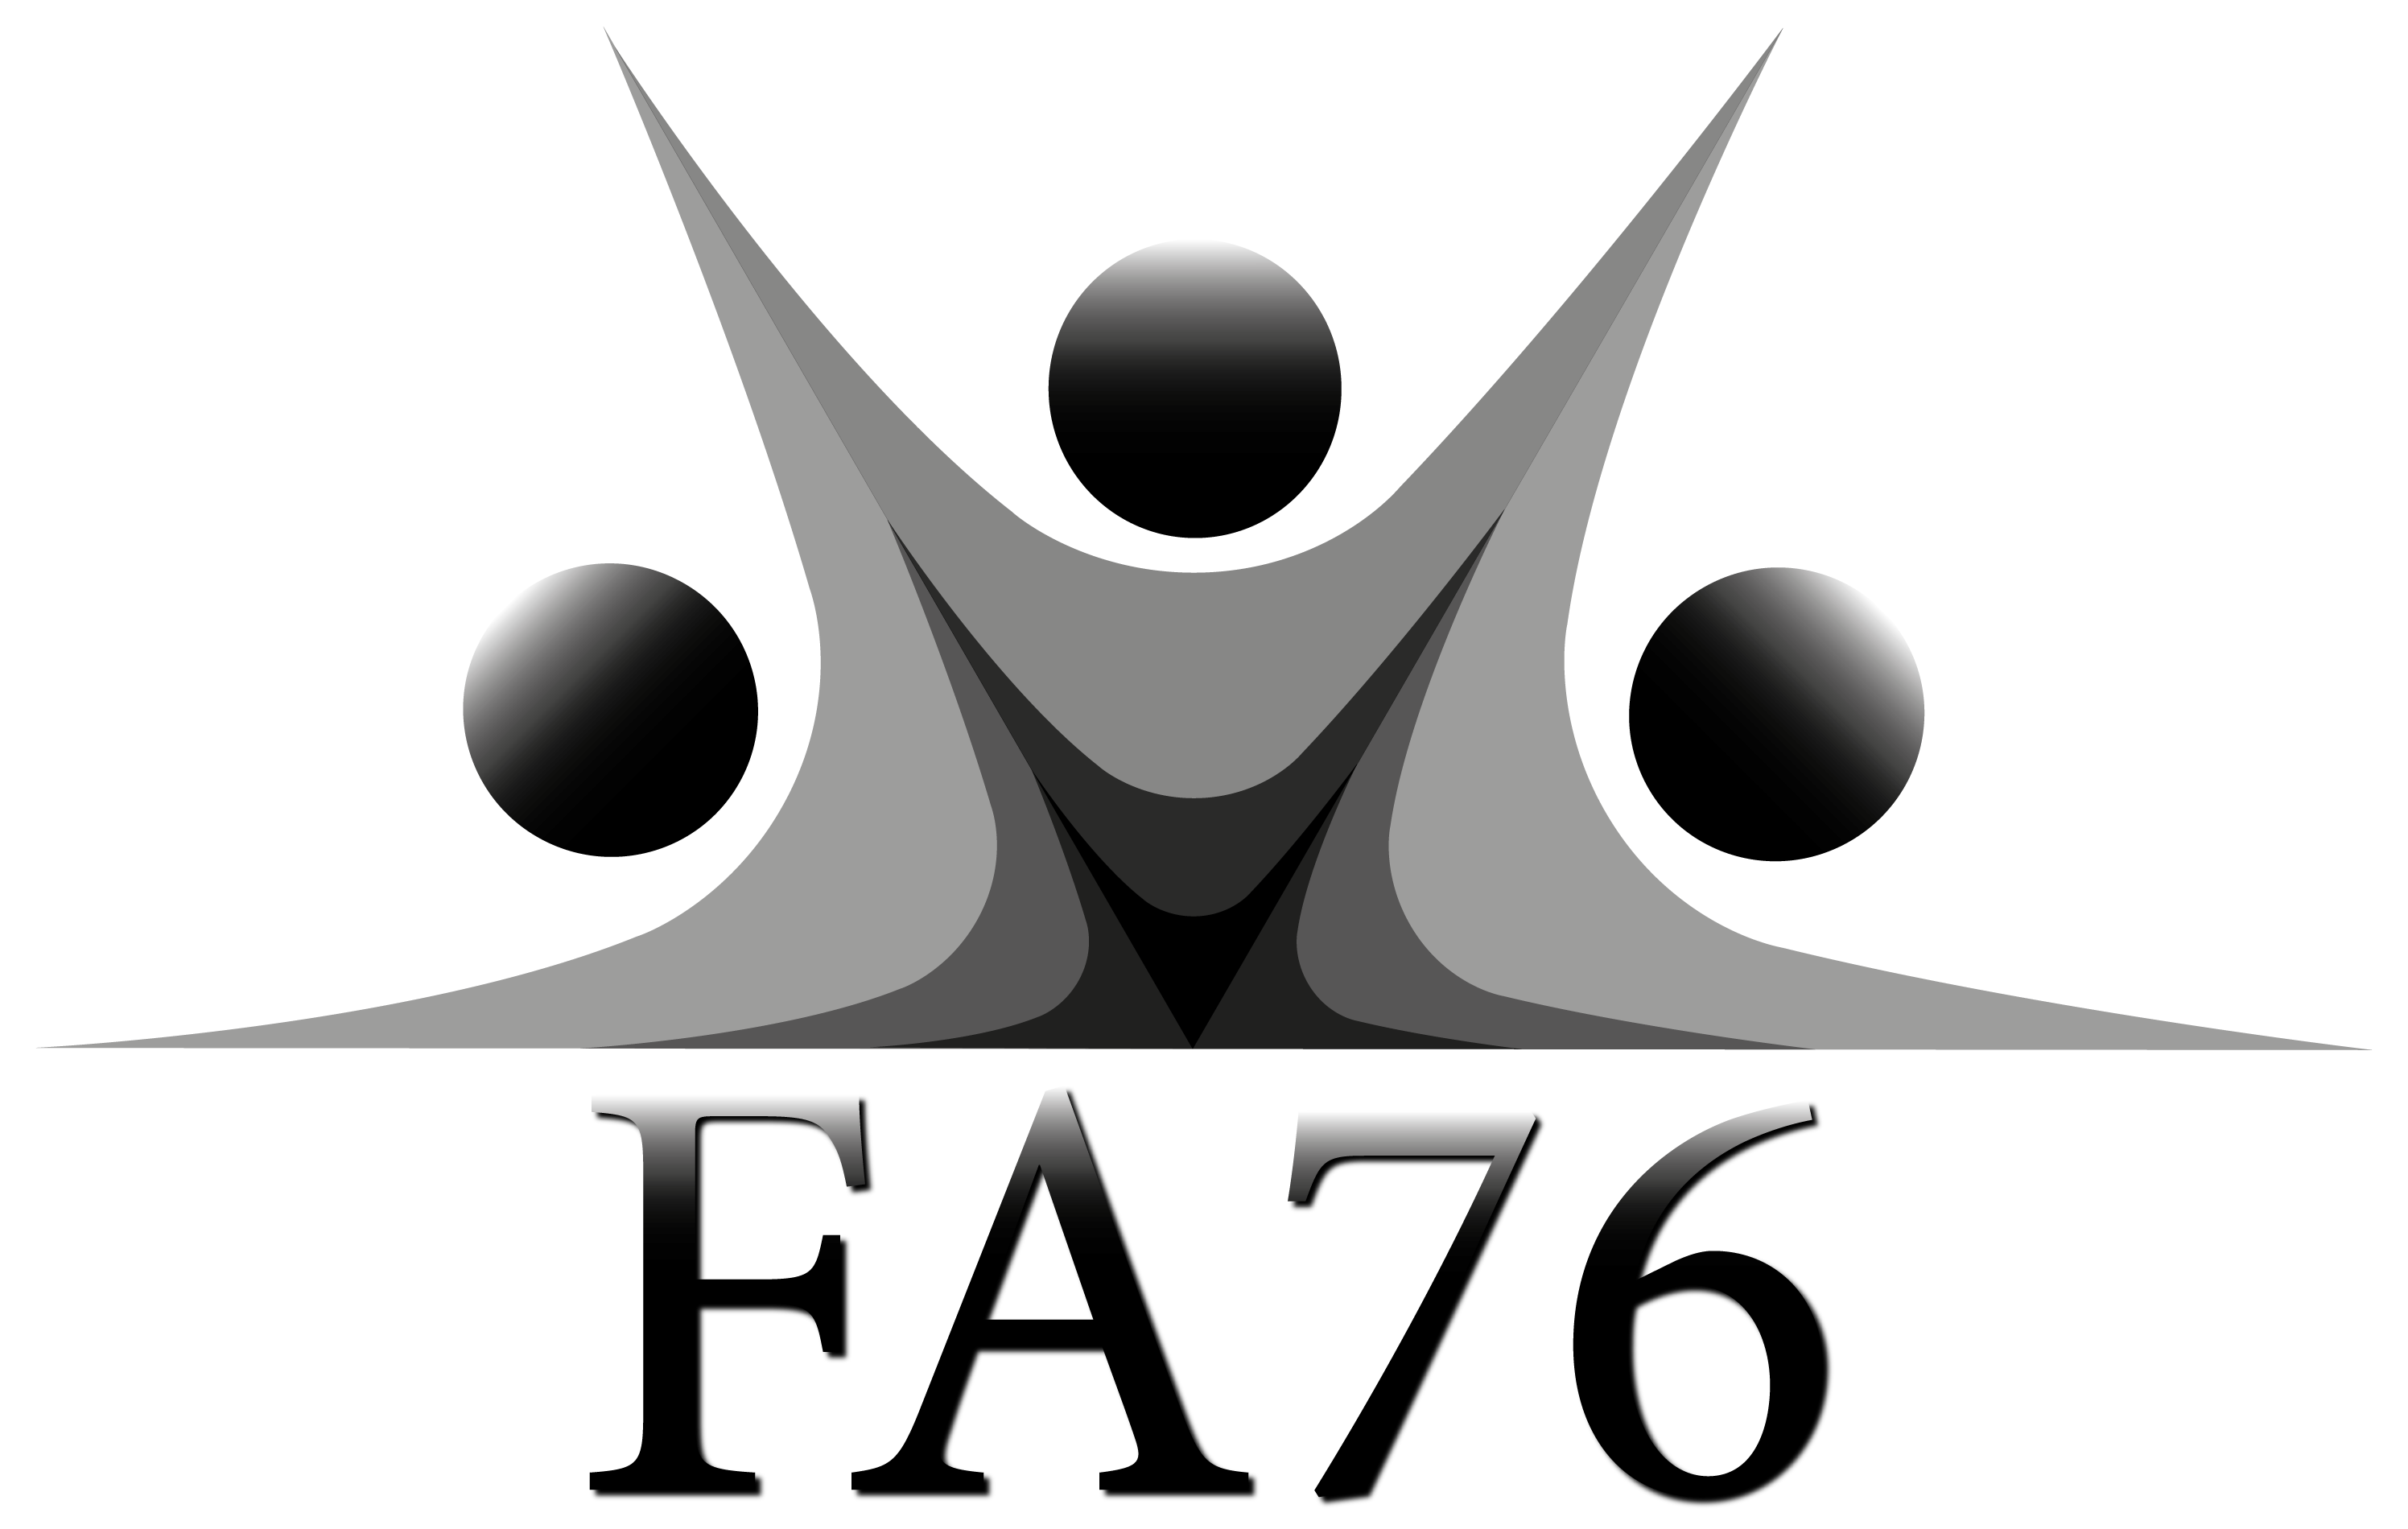 FA76 Logo